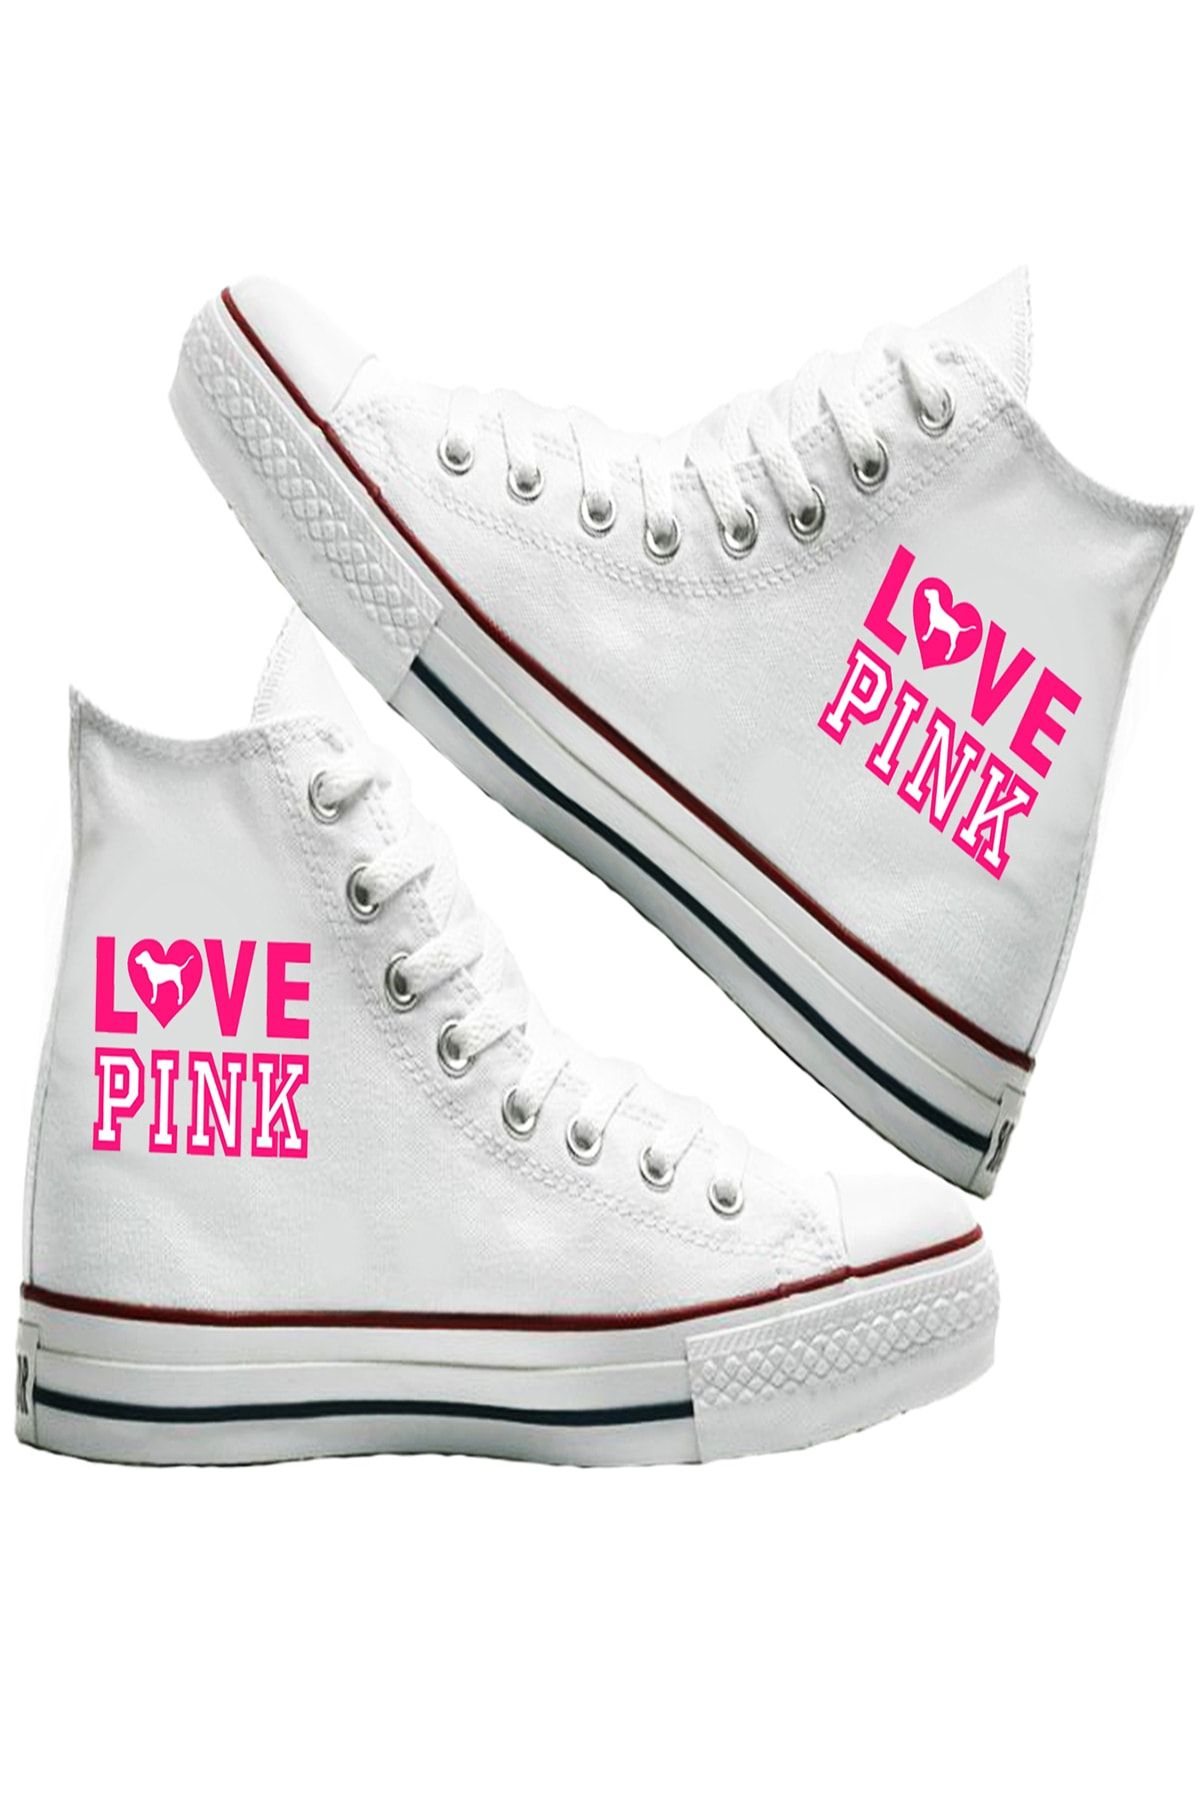 Art's Beyaz - Love Pink Tasarım Unisex Canvas Ayakkabı